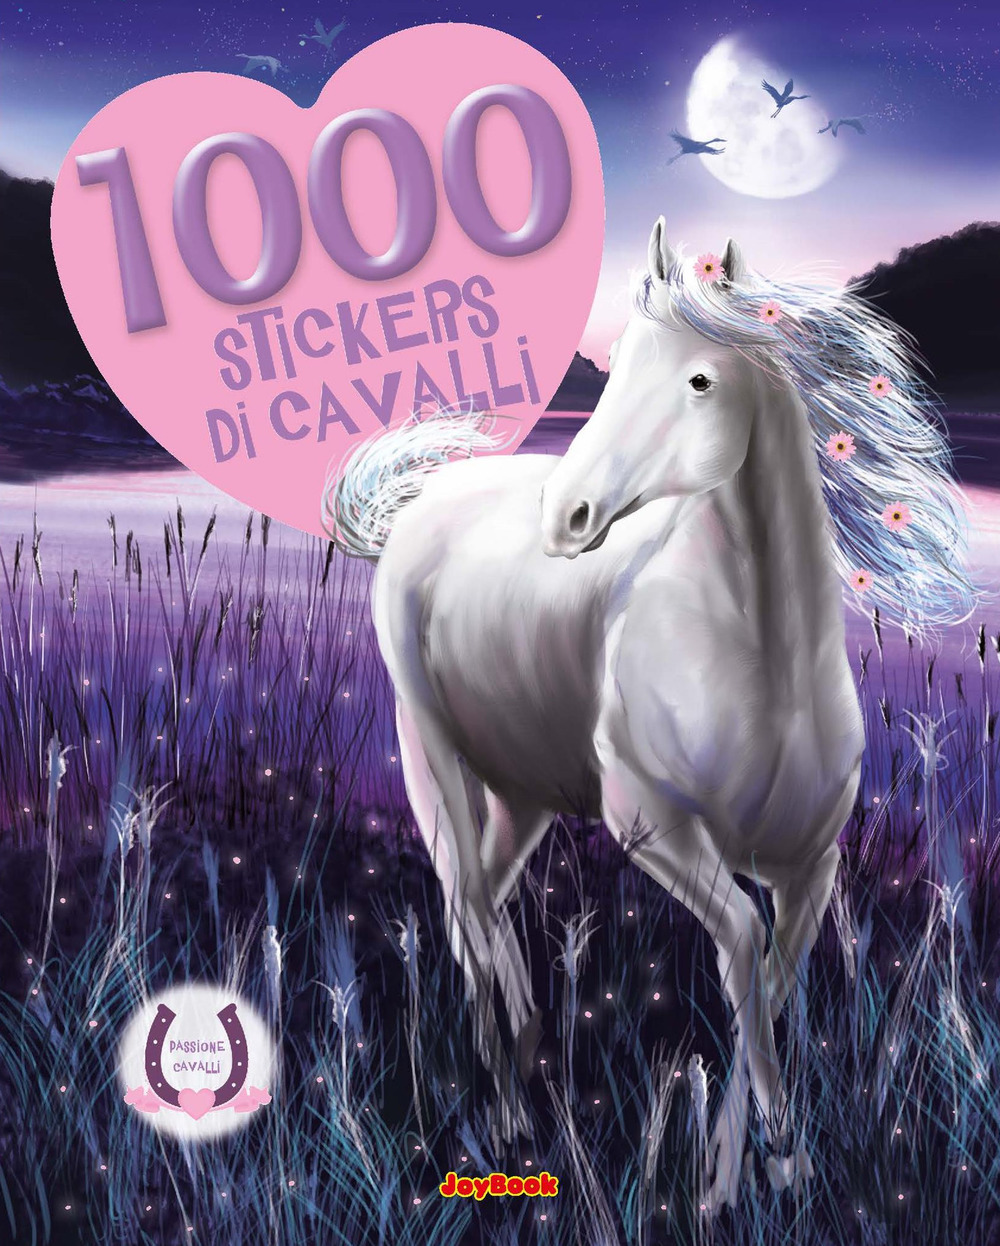 Image of 1000 stickers di cavalli